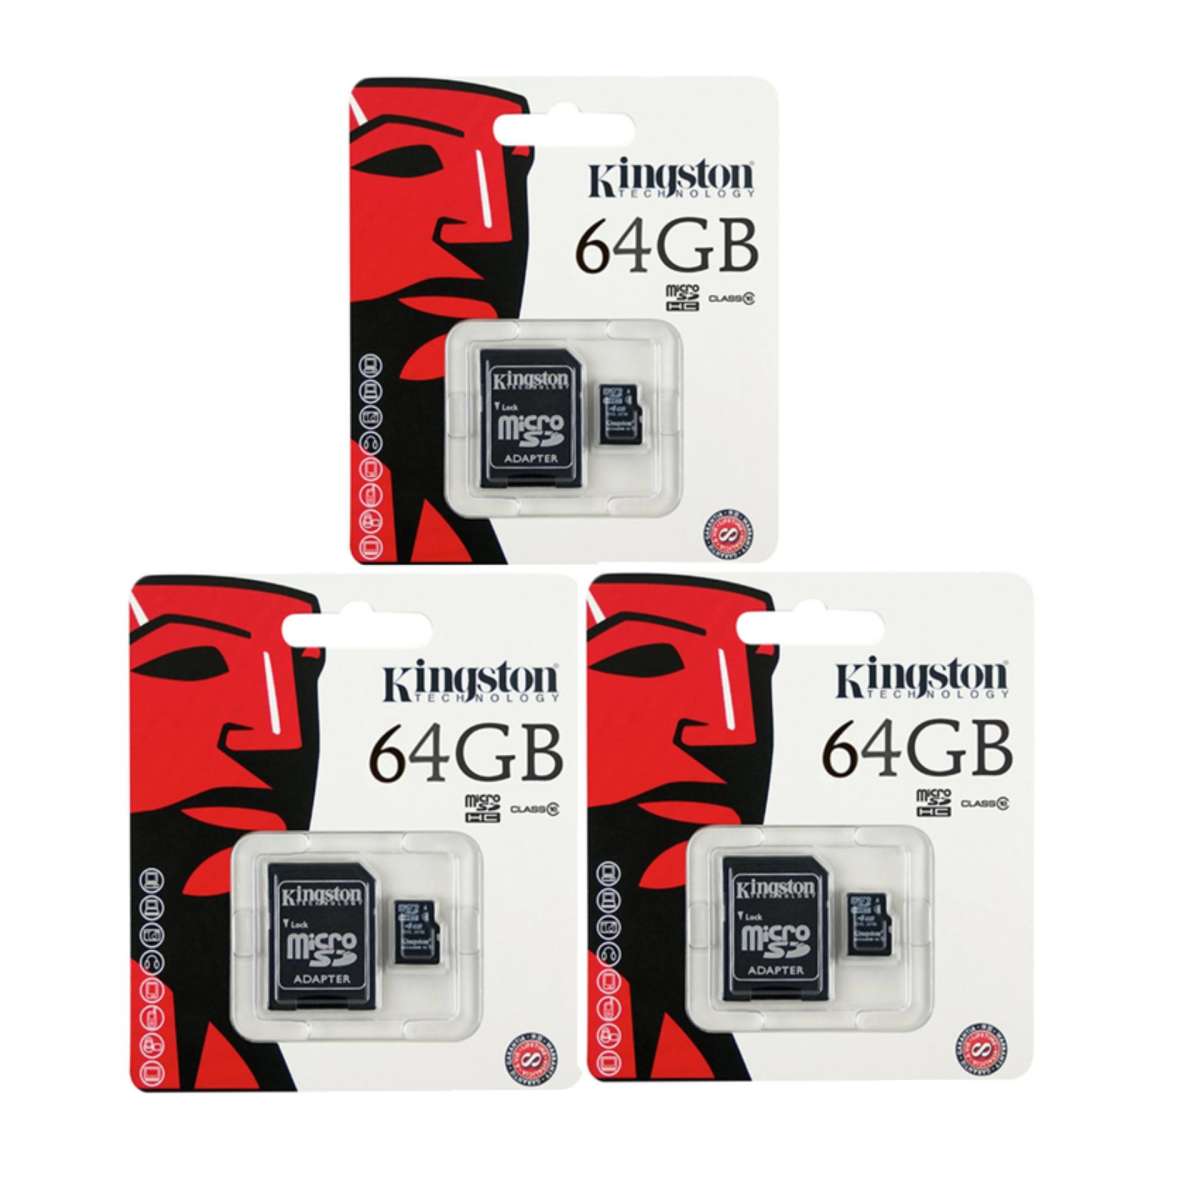 รูปภาพรายละเอียดของ ถูกสุดๆ (ของแท้) Kingston เมมโมรี่การ์ด 64GB SDHC/SDXC Class 10 UHS-I Micro SD Card with Adapter